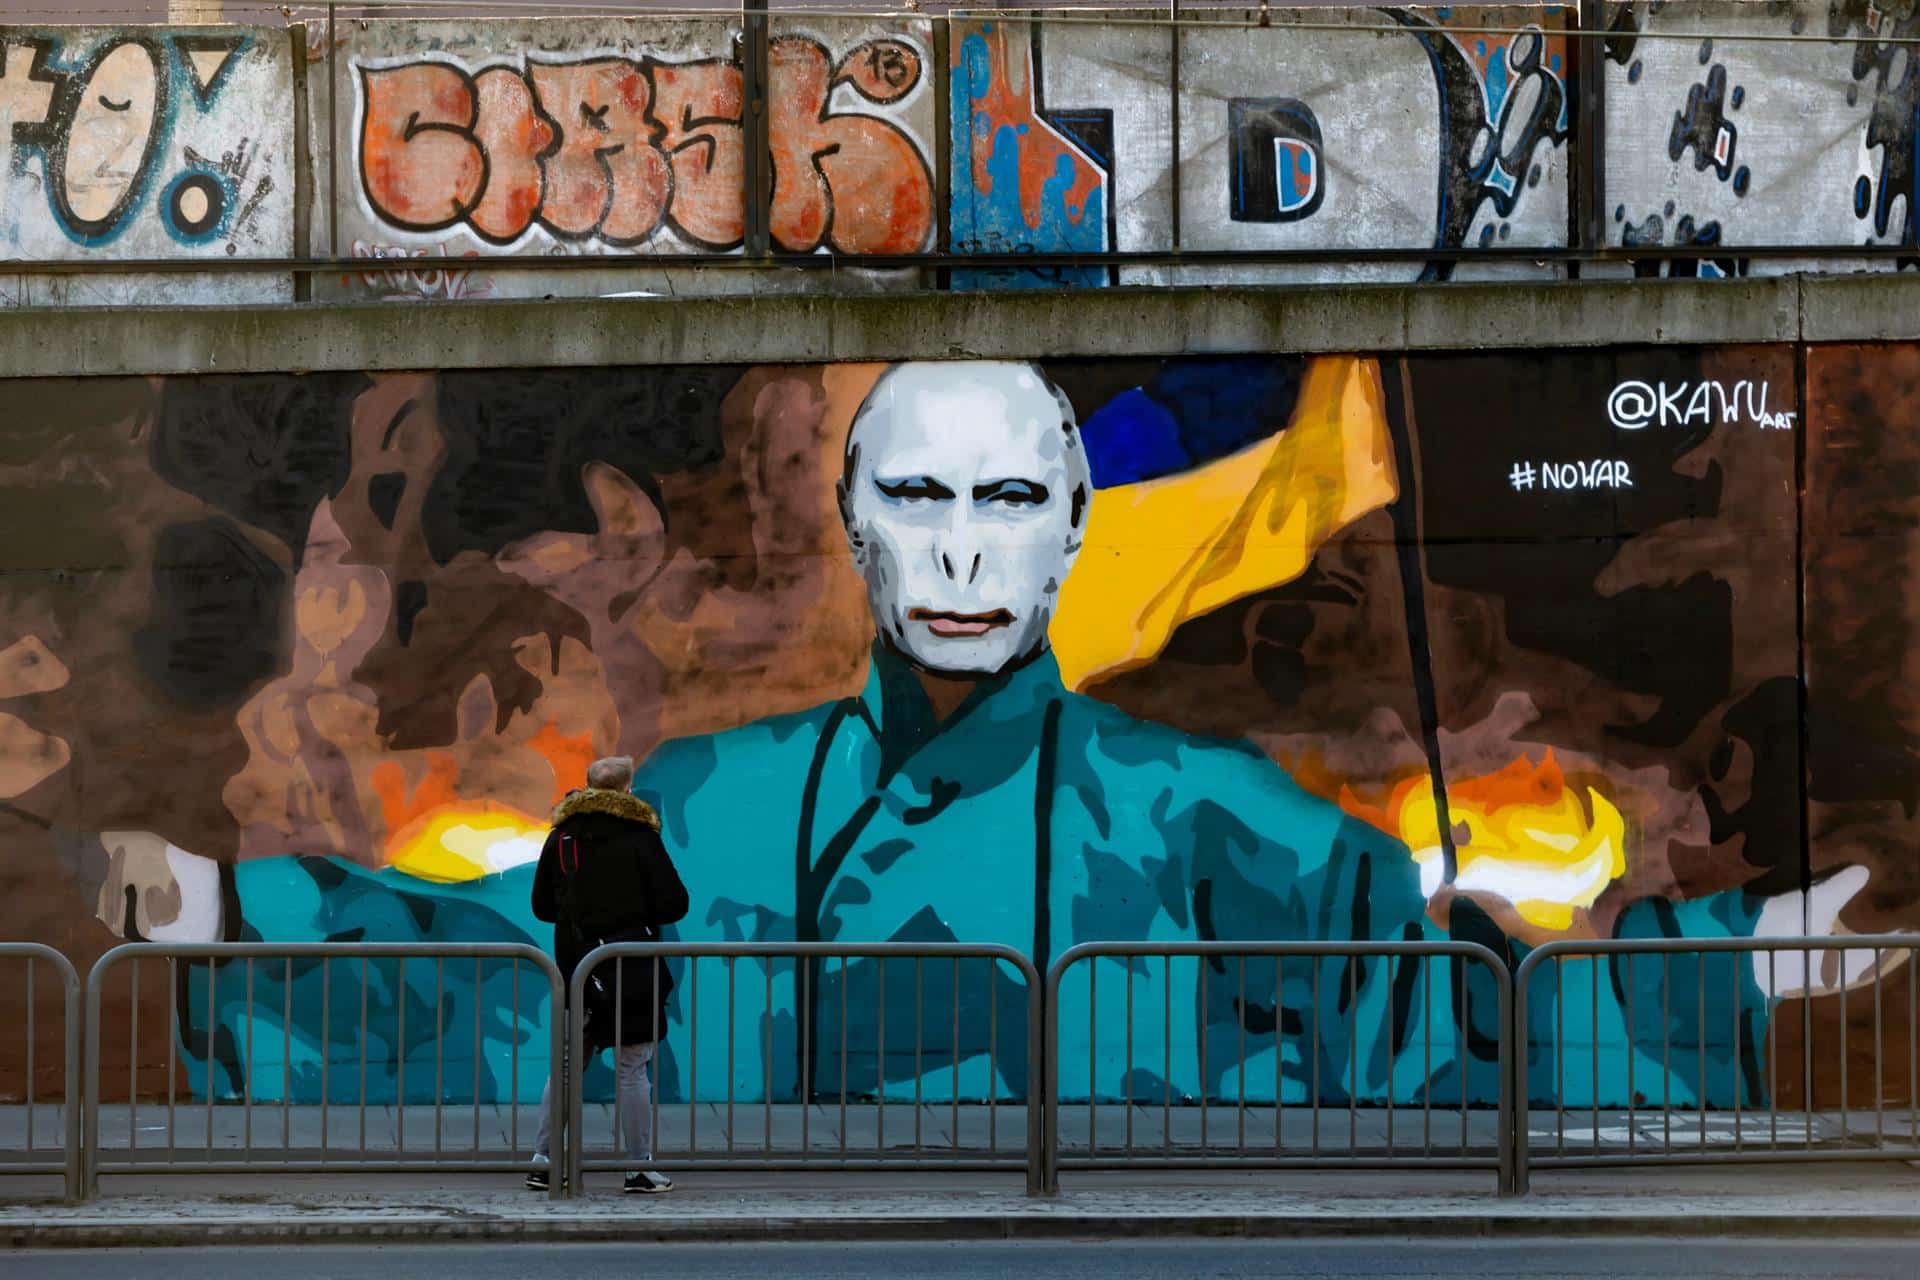 Mural contra la guerra que muestra a Lord Voldemort, el principal villano y antagonista de la serie de novelas "Harry Potter" de JK Rowling, con el rostro del presidente ruso Vladimir Putin, creado por el artista de graffiti KAWU, en una pared en Poznan, Polonia.